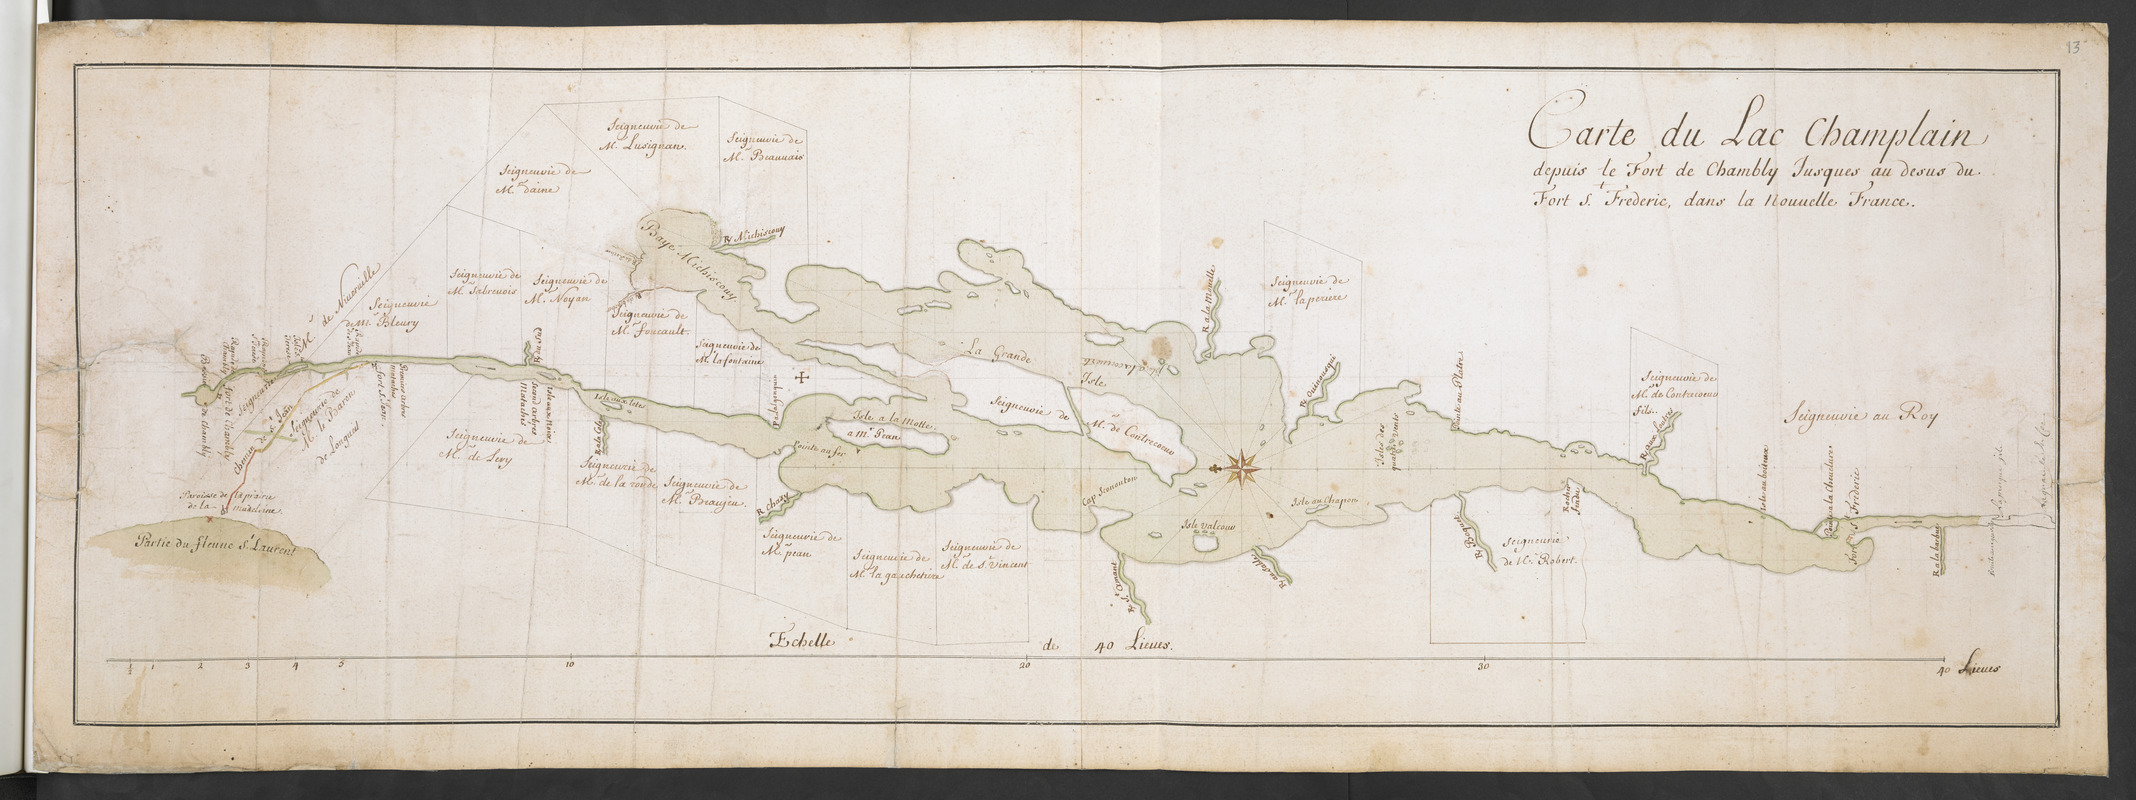 Carte du Lac Champlain depuis le Fort de Chambly Jusques au desus du Fort S.t Frederic, dans la Nouvelle France